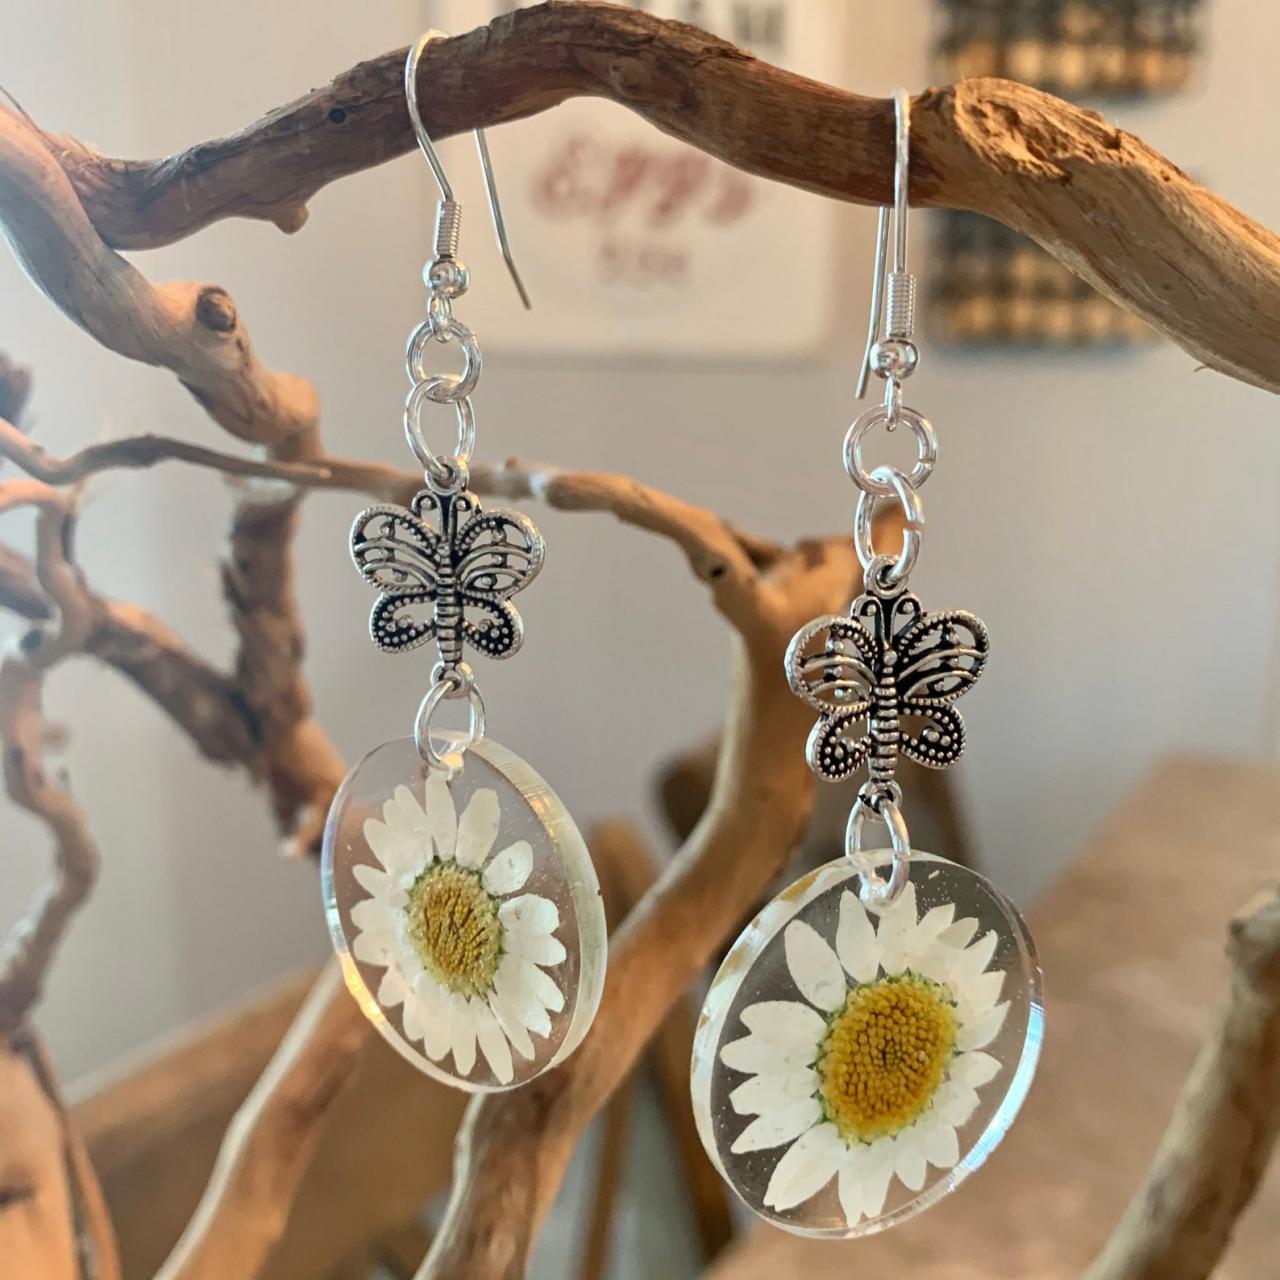 Resin Daisy Flower Earrings With Butterfly Charm, Pressed Dried Flower Earrings, Jewelry For Women